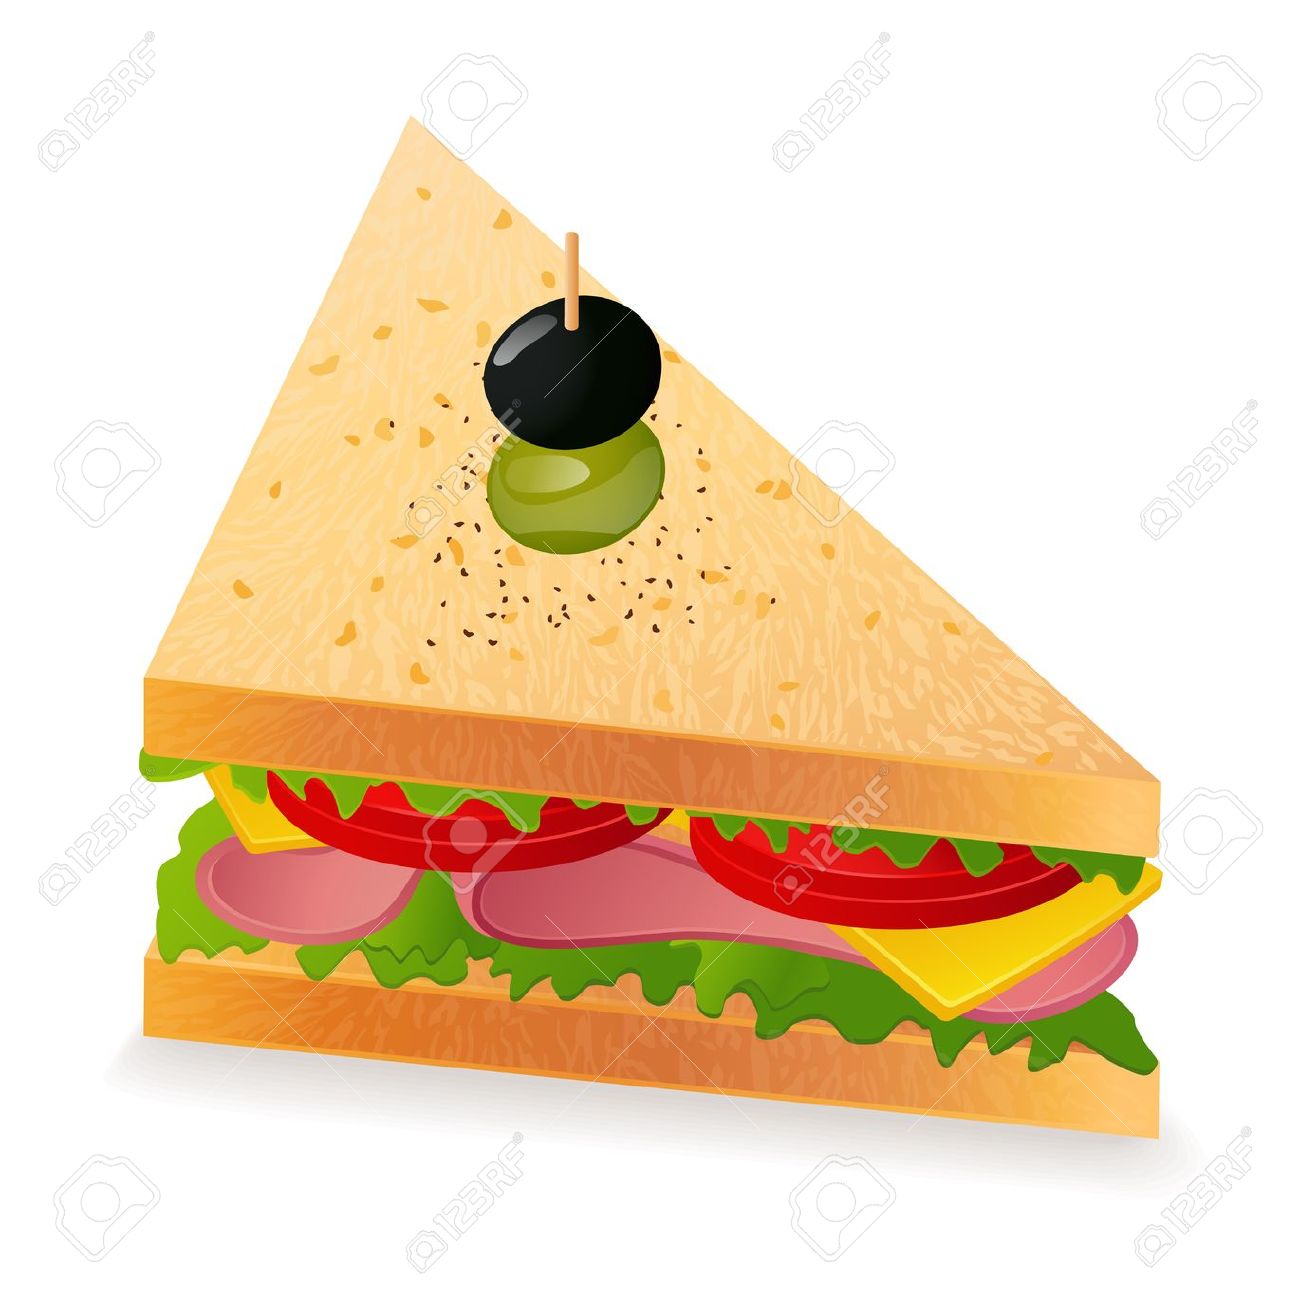 Triangle sandwich clipart